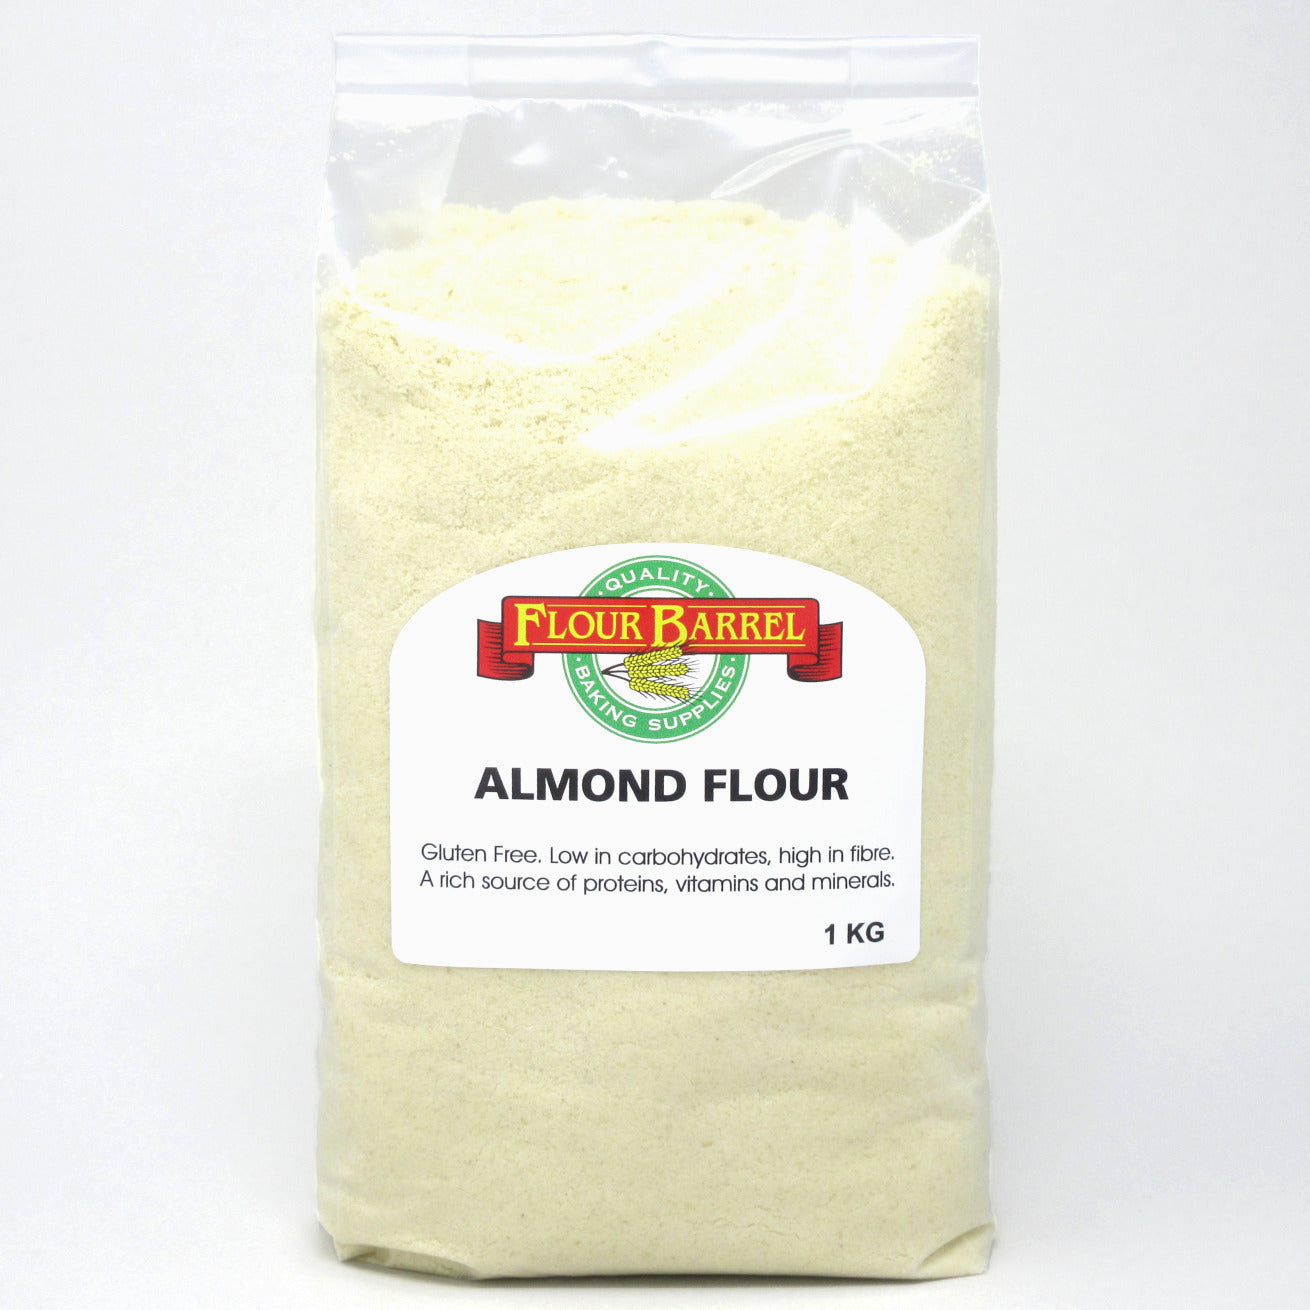 Flour Barrel product image - Almond Flour